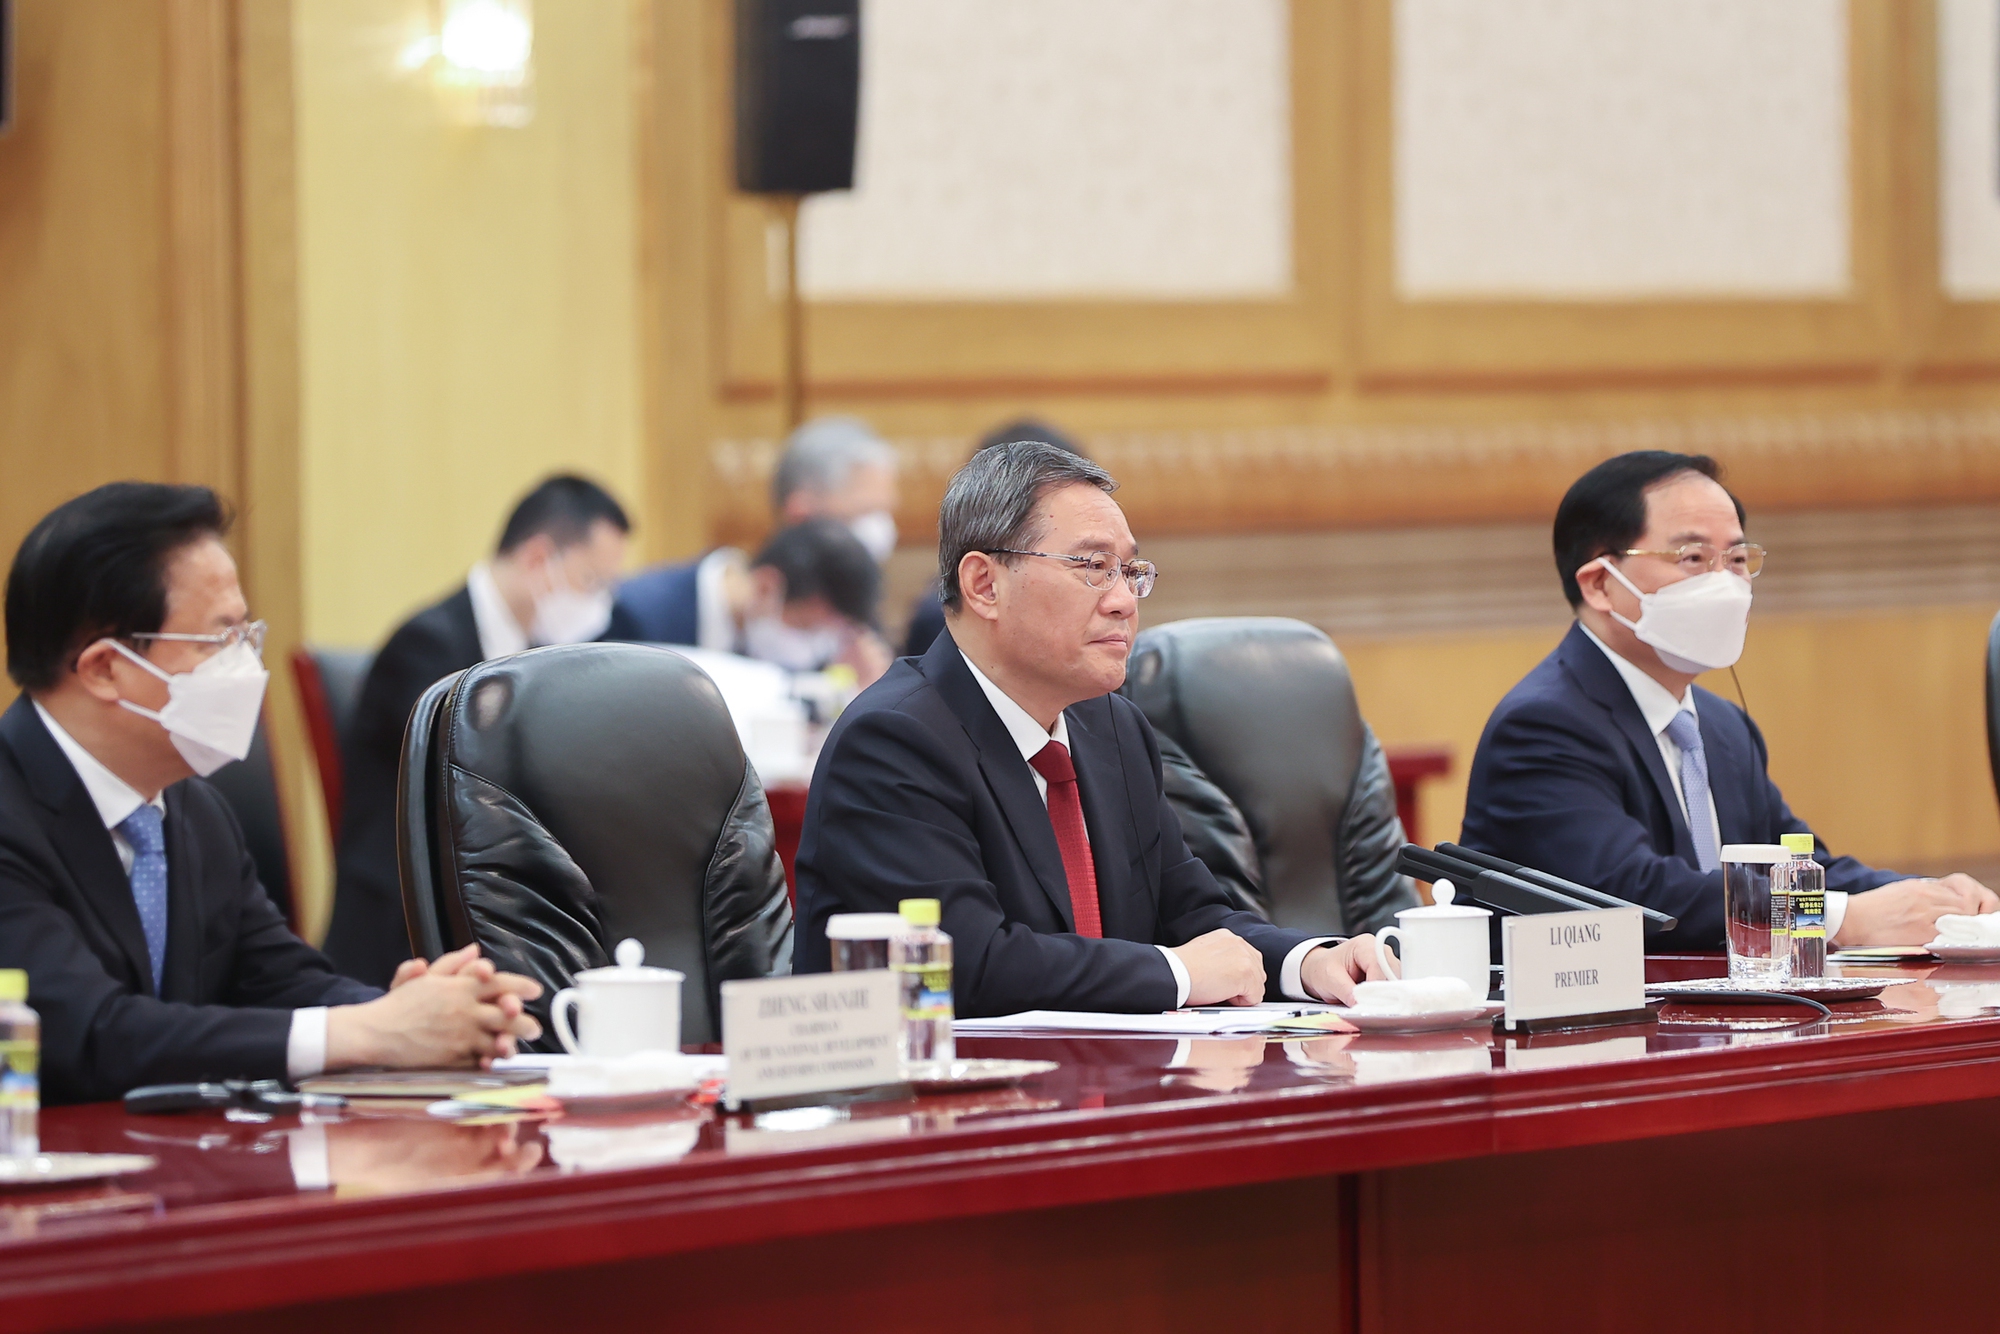 Chùm ảnh: Lễ đón chính thức Thủ tướng Chính phủ Phạm Minh Chính thăm Trung Quốc - Ảnh 9.